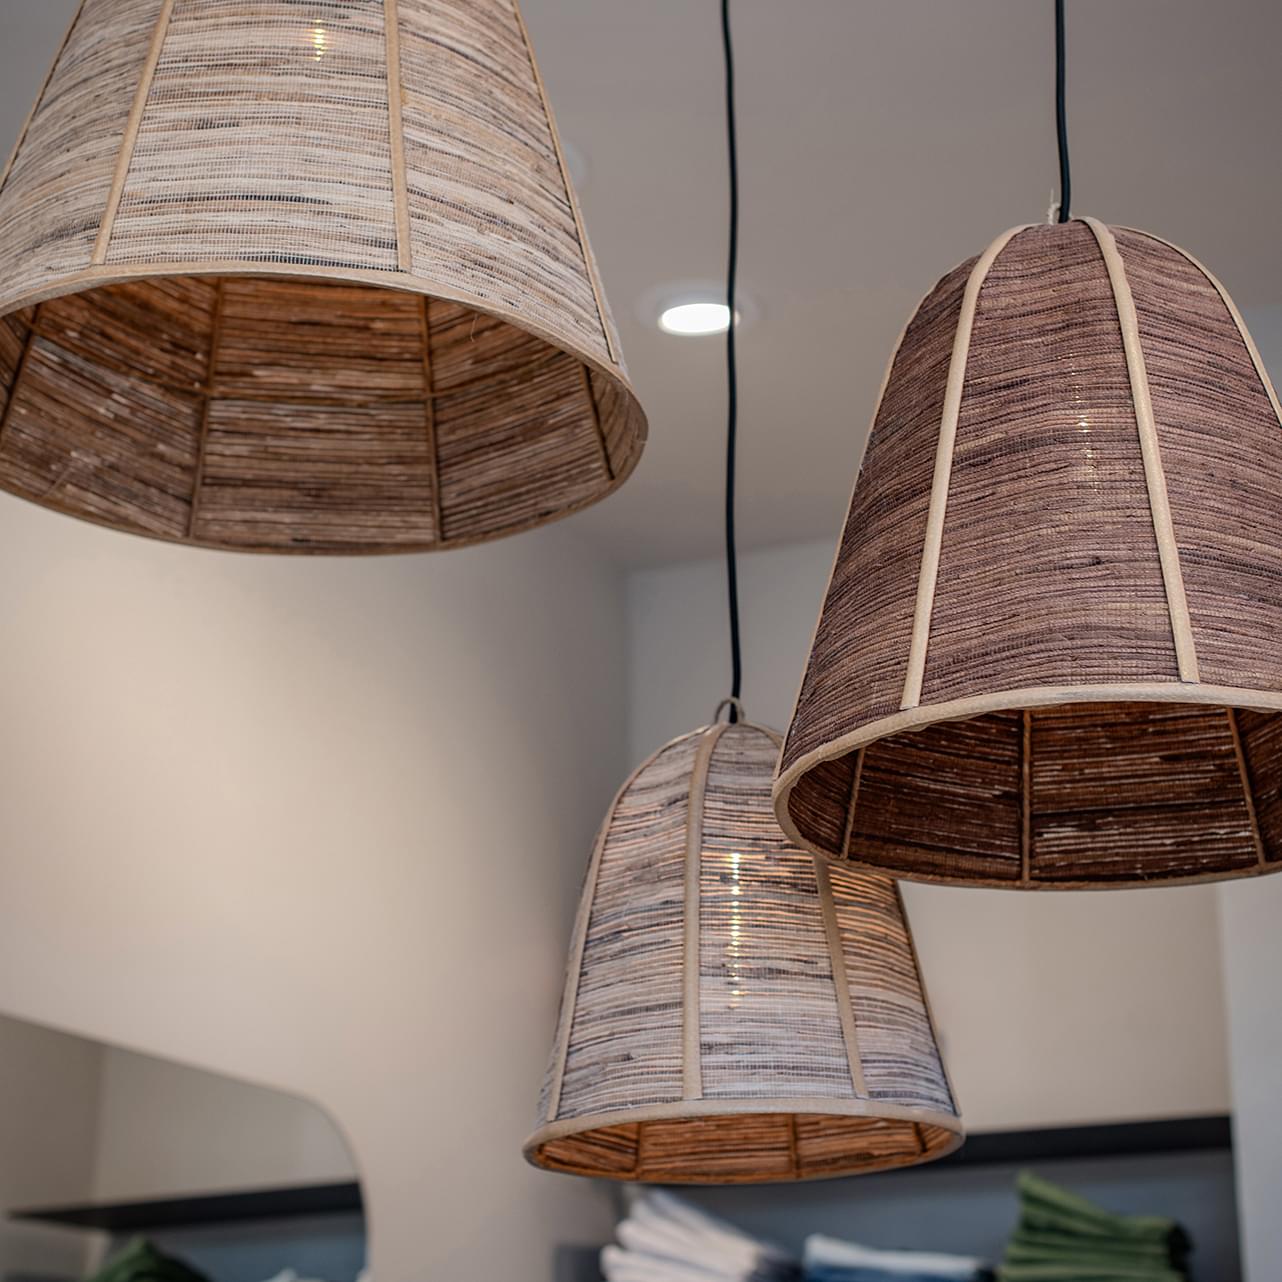 detalle de las lámparas del proyecto de interiorismo comercial de Calé Moda